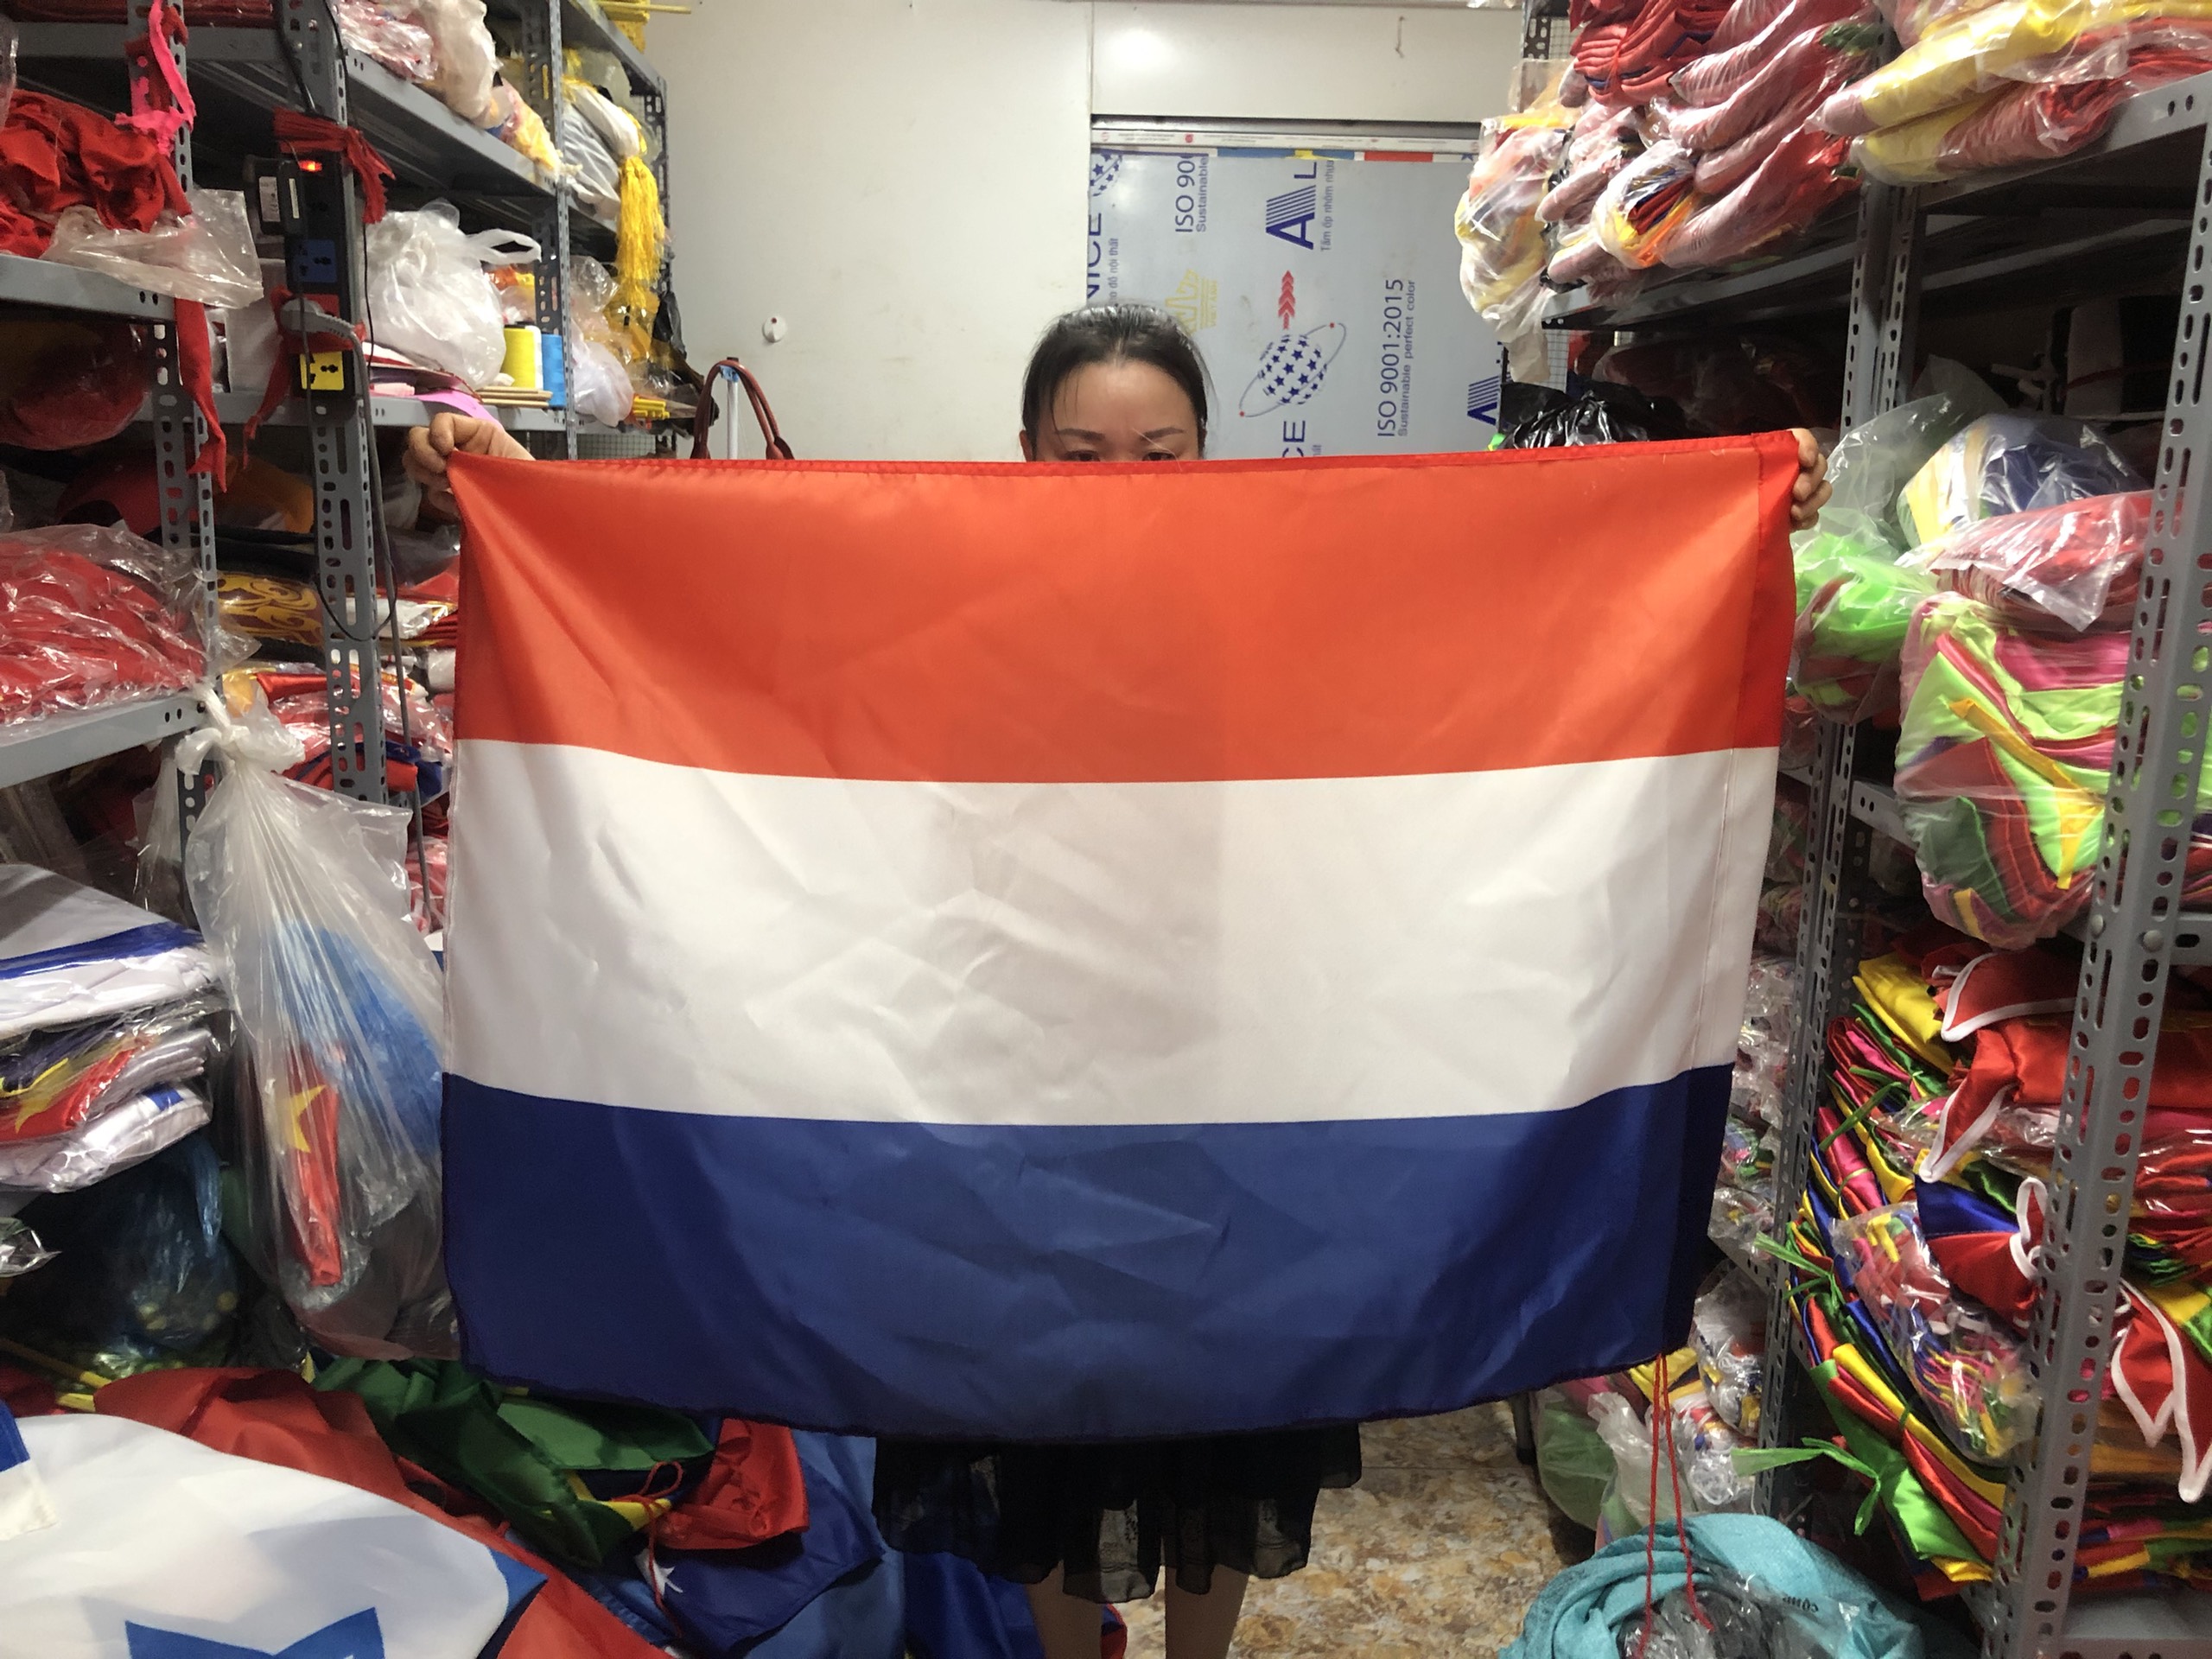 Cờ Hà Lan: Vào năm 2024, cờ Hà Lan sẽ được ưa chuộng hơn bao giờ hết khi nước này trở thành điểm đến du lịch yêu thích của du khách trên khắp thế giới. Cờ Hà Lan với những sắc màu đỏ, trắng, xanh đặc trưng sẽ càng được nhìn thấy nhiều hơn trên các bảng hiệu, áo phông hay vật phẩm lưu niệm. Hãy xem những hình ảnh đẹp về cờ Hà Lan để cảm nhận sự truyền cảm hứng của nước này.